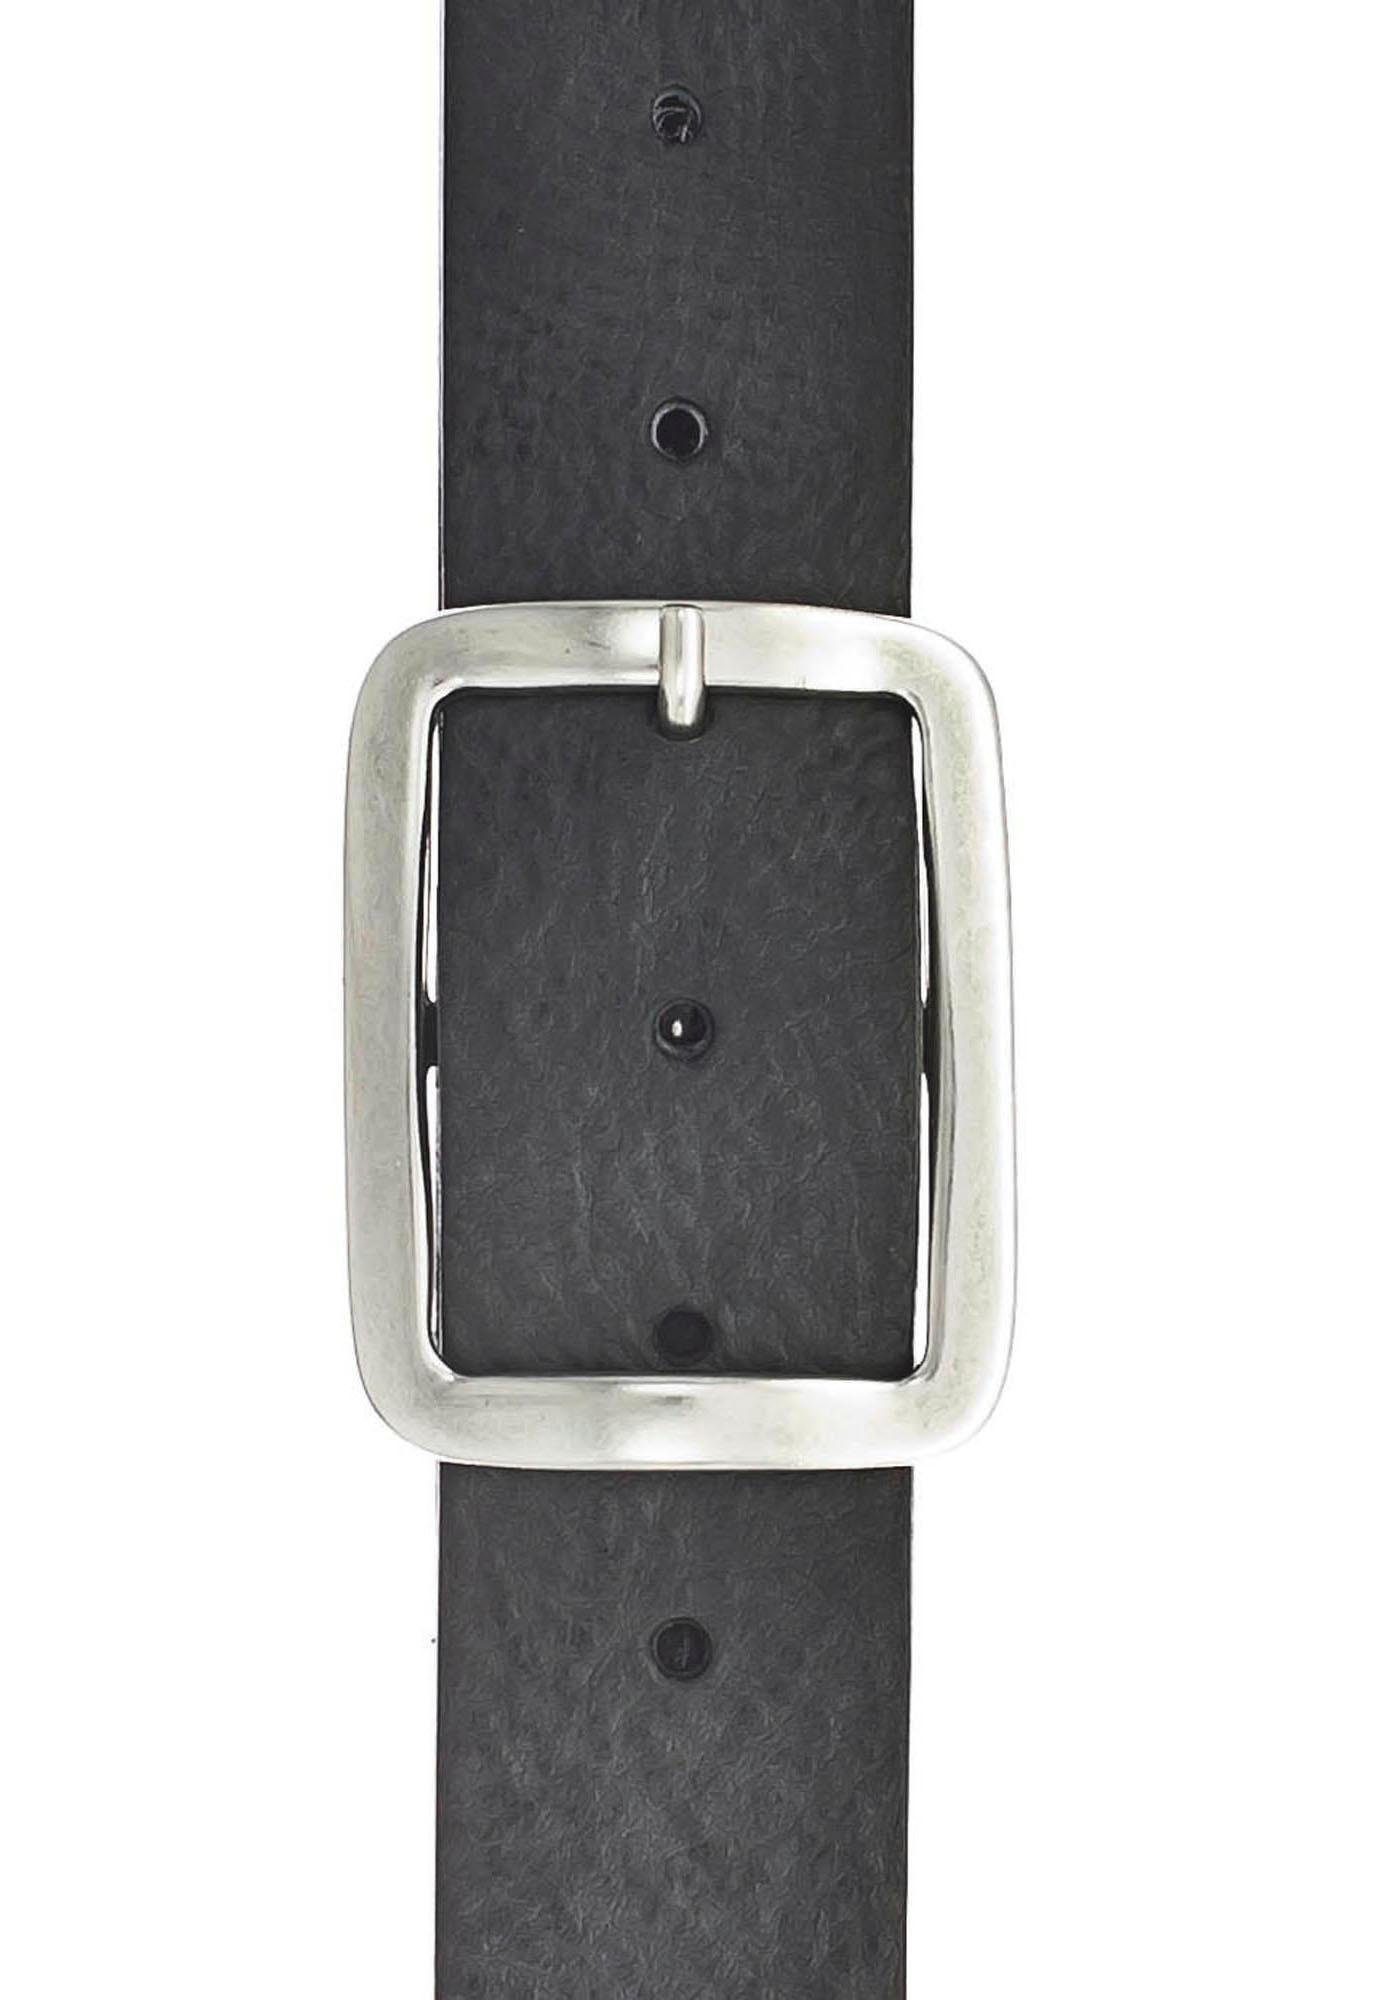 geölter Ledergürtel mit Look Vanzetti Vintage Oberfläche, und schwarz gekalkter charakteristisch